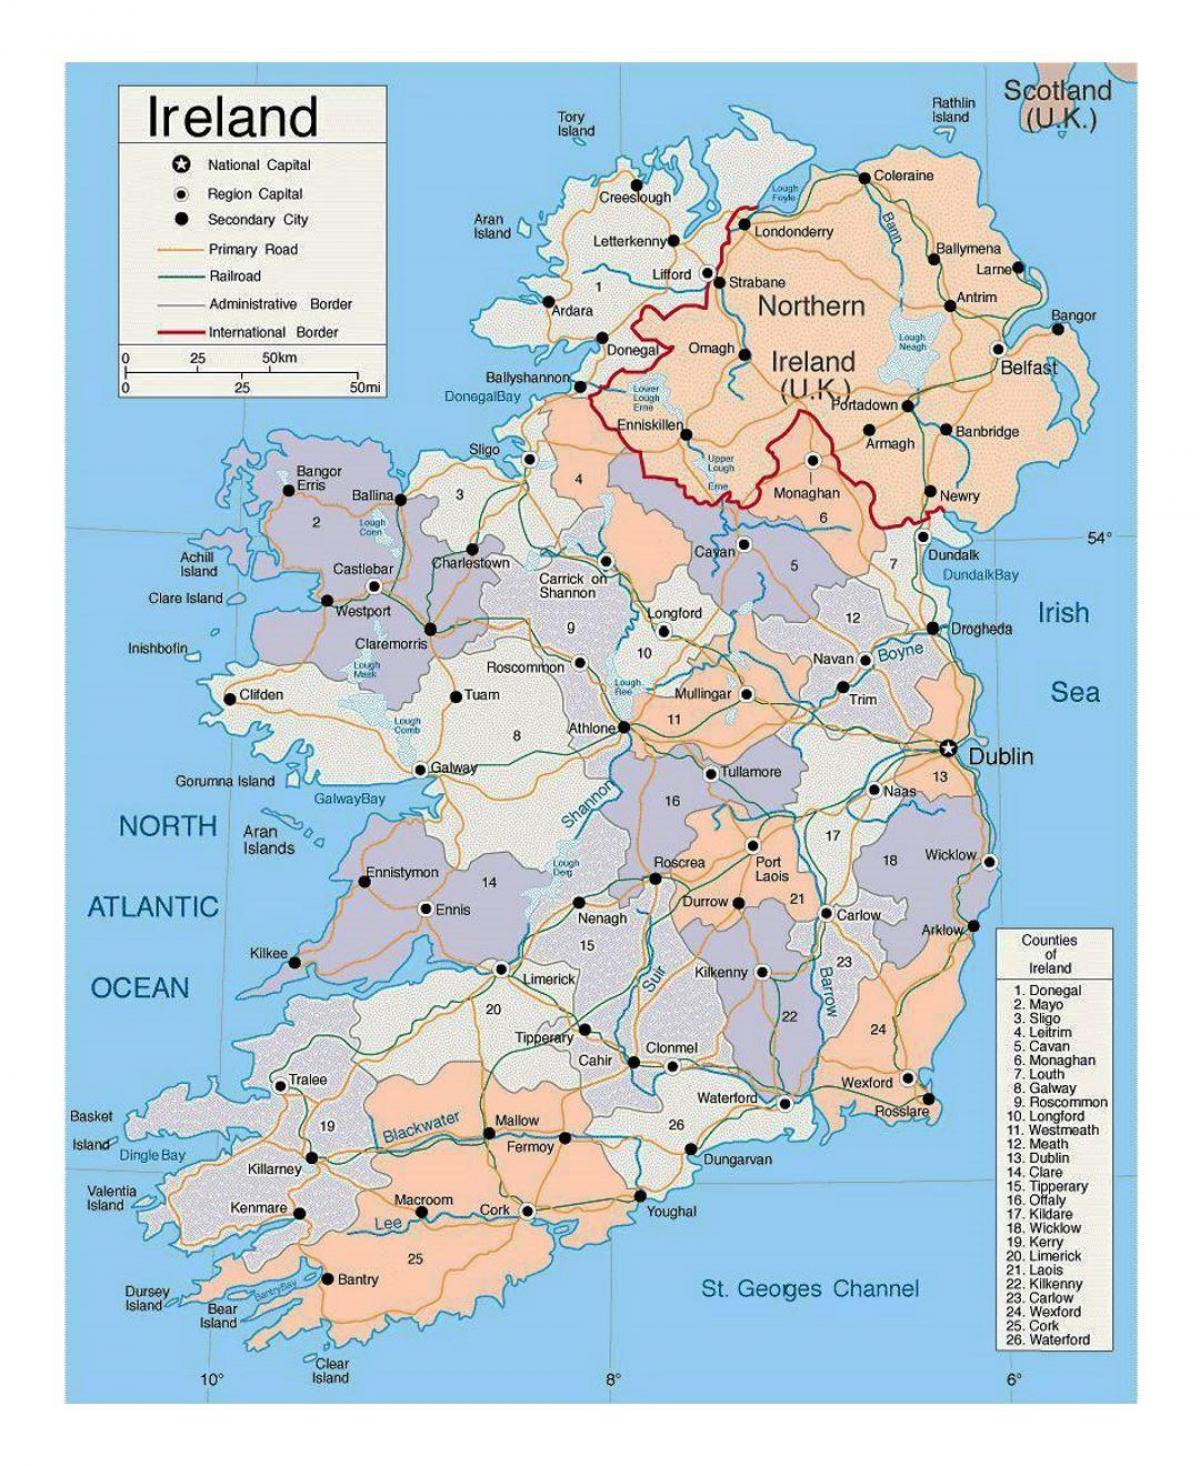 χάρτης της ιρλανδίας με τις πόλεις